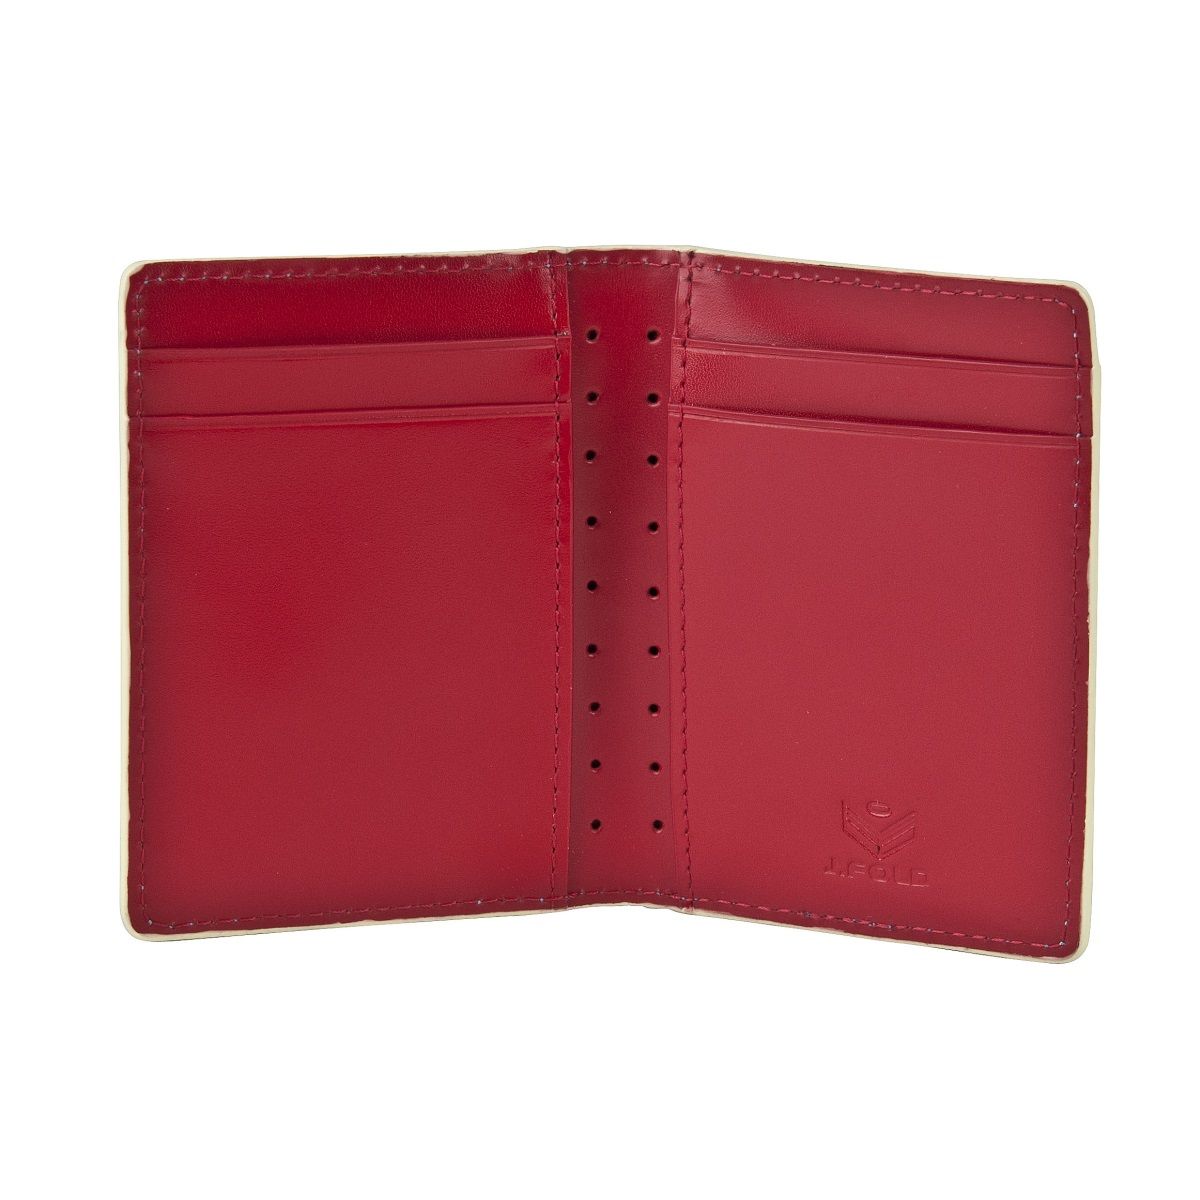 J.FOLD Folding Carrier Wallet - Red